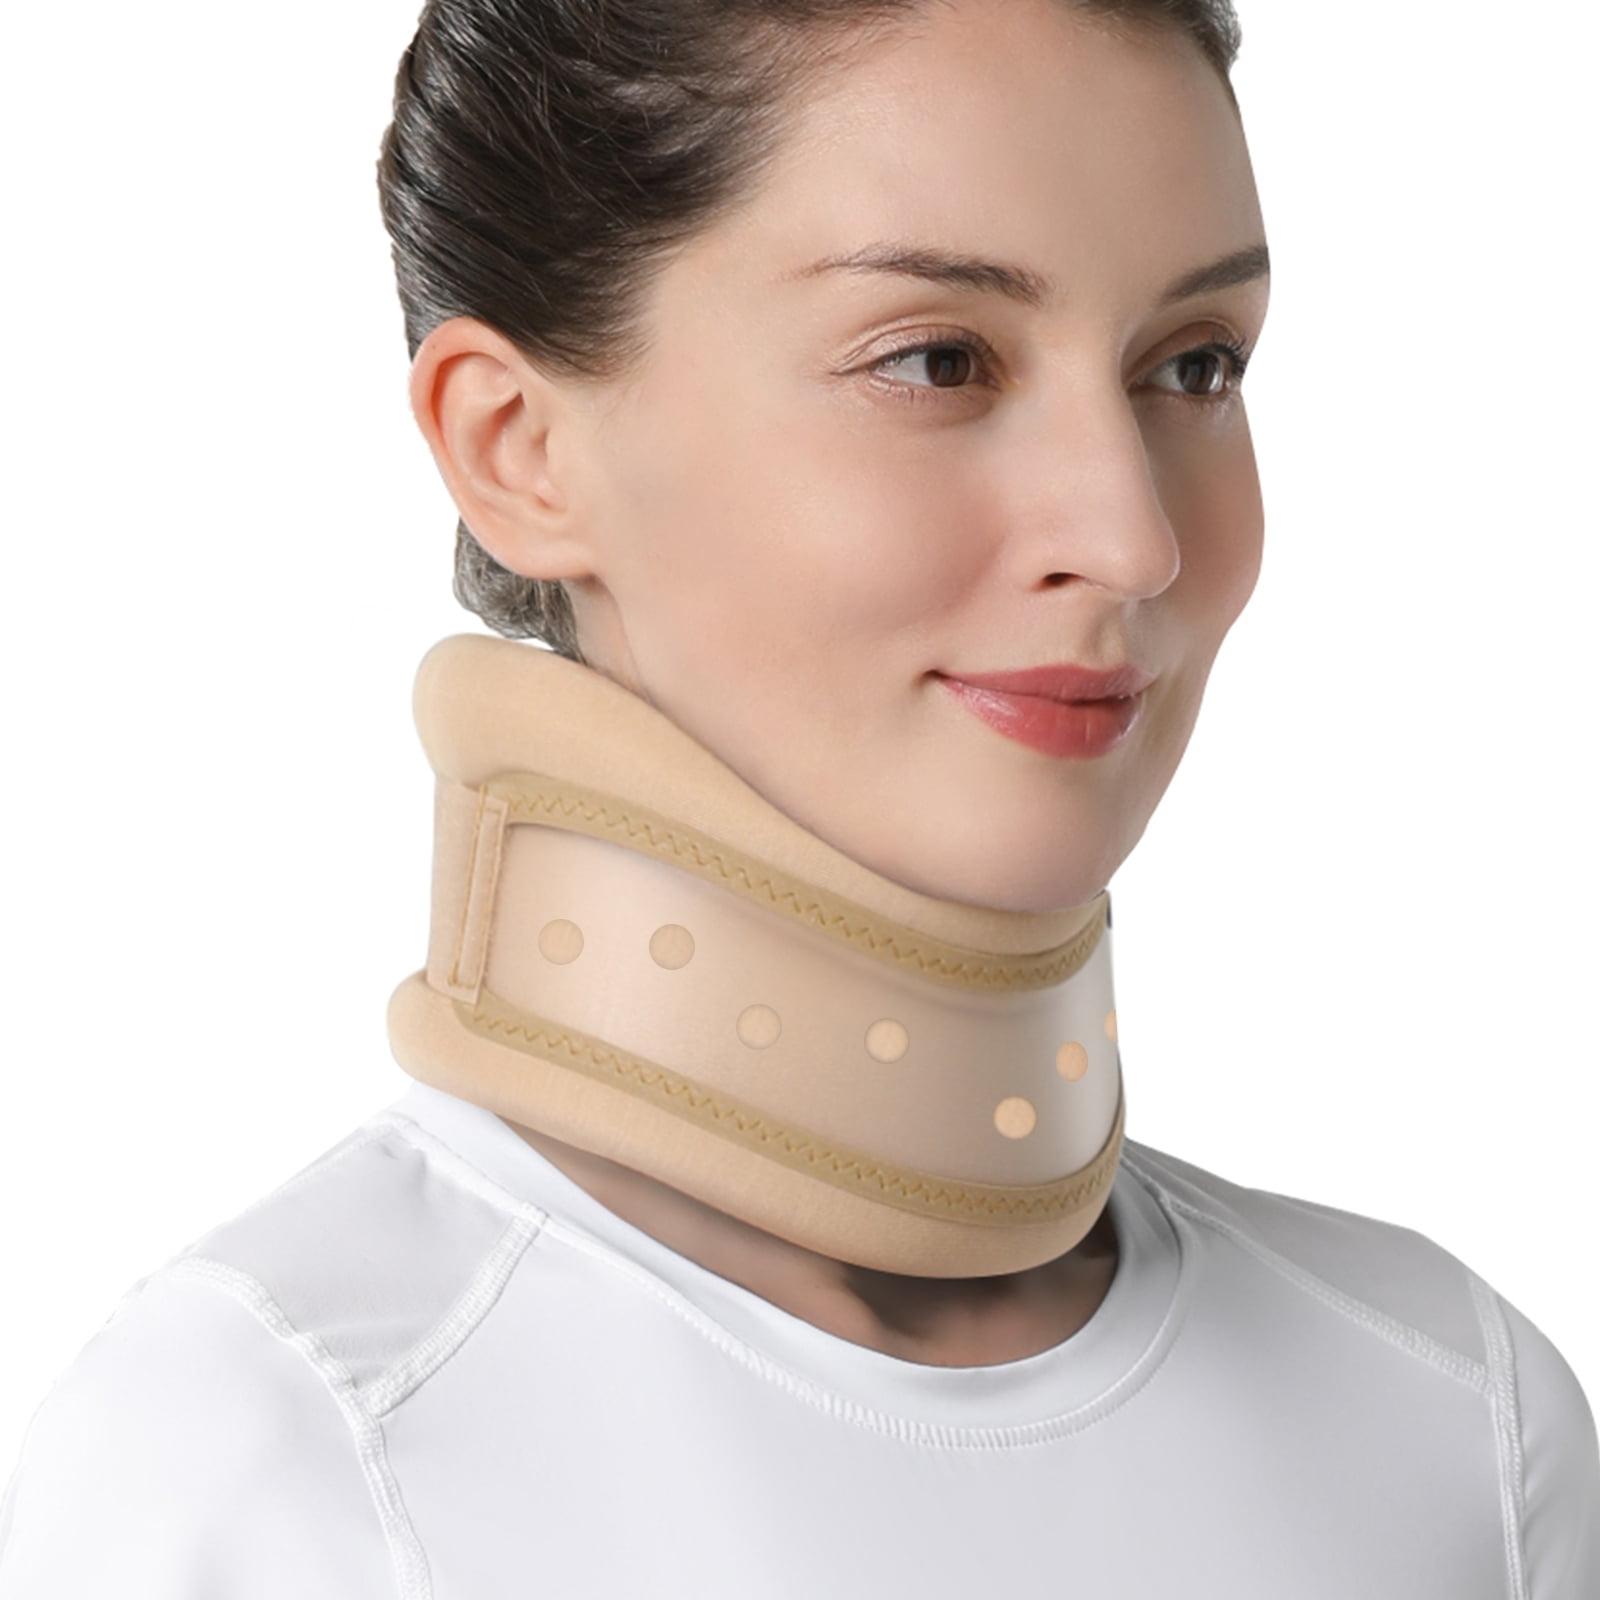 Highly Advanced foam neck brace 